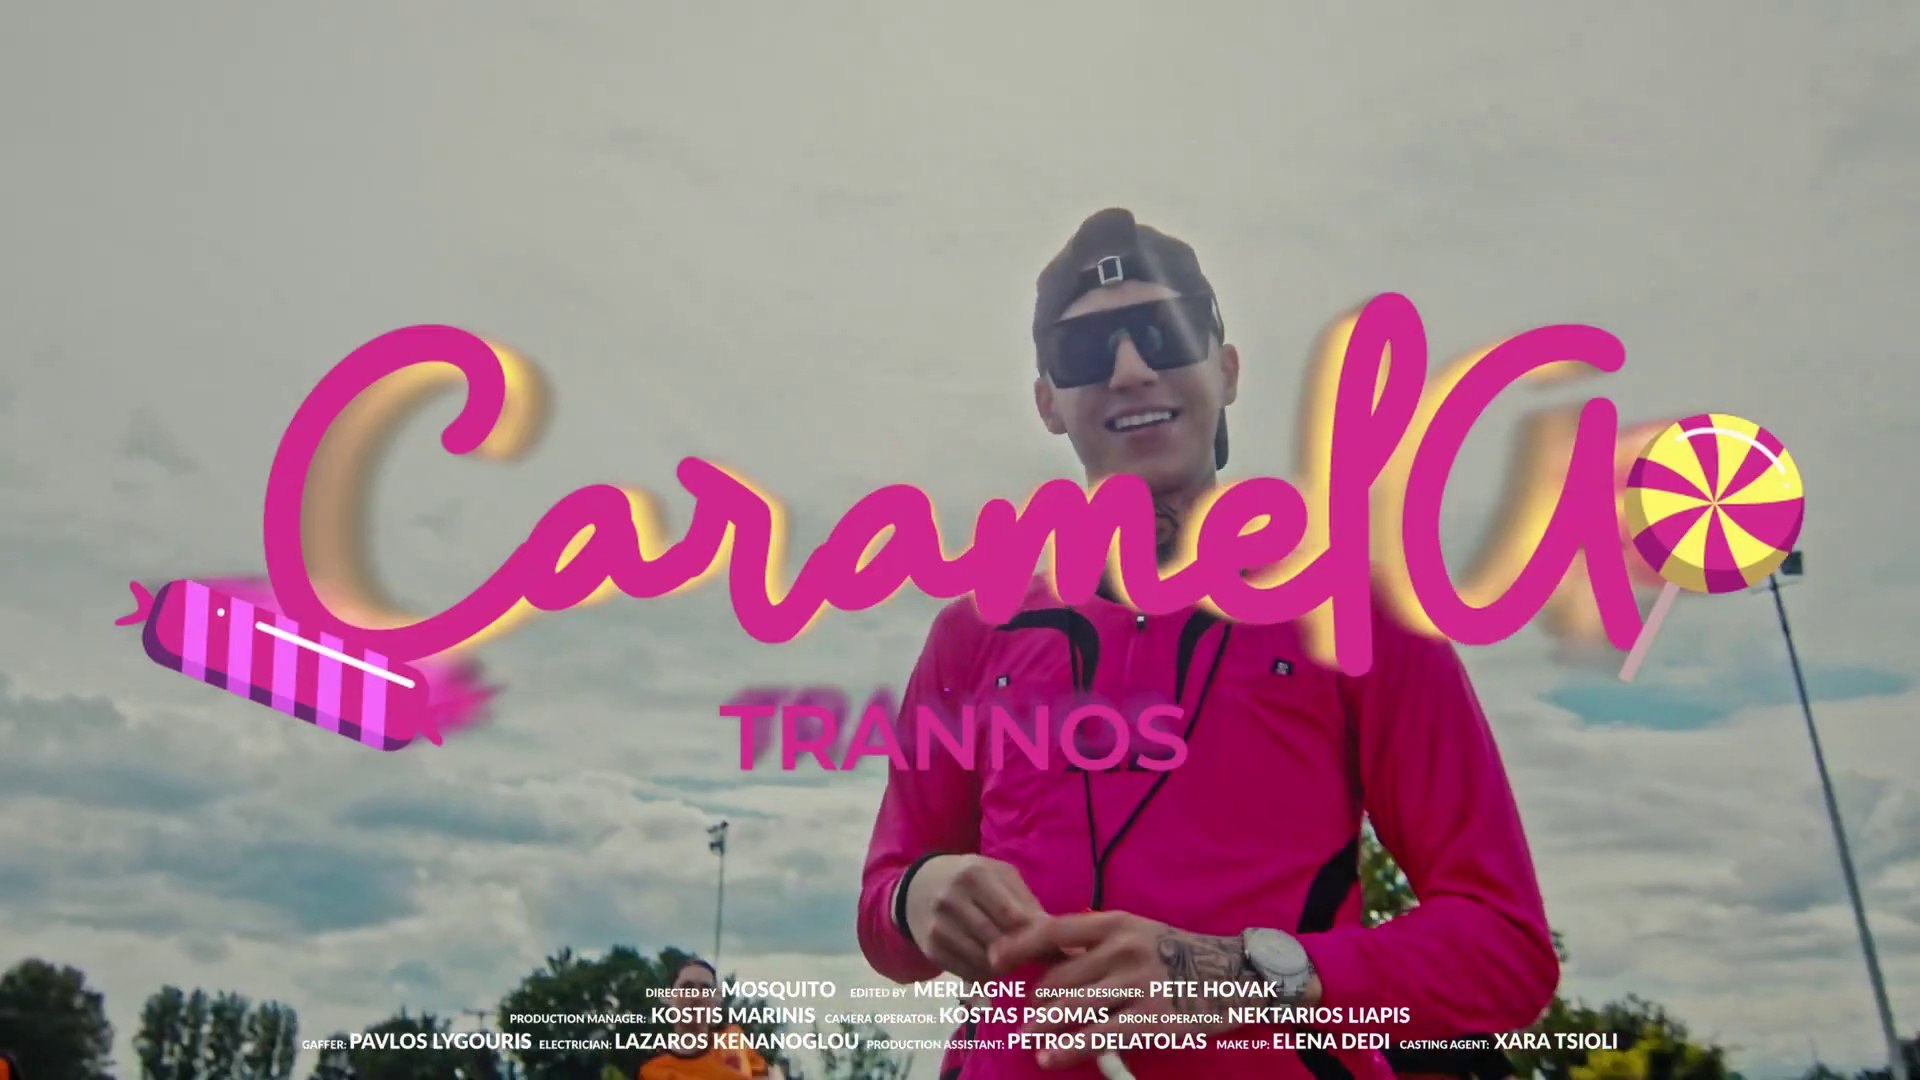 Trannos - Caramela - video Dailymotion